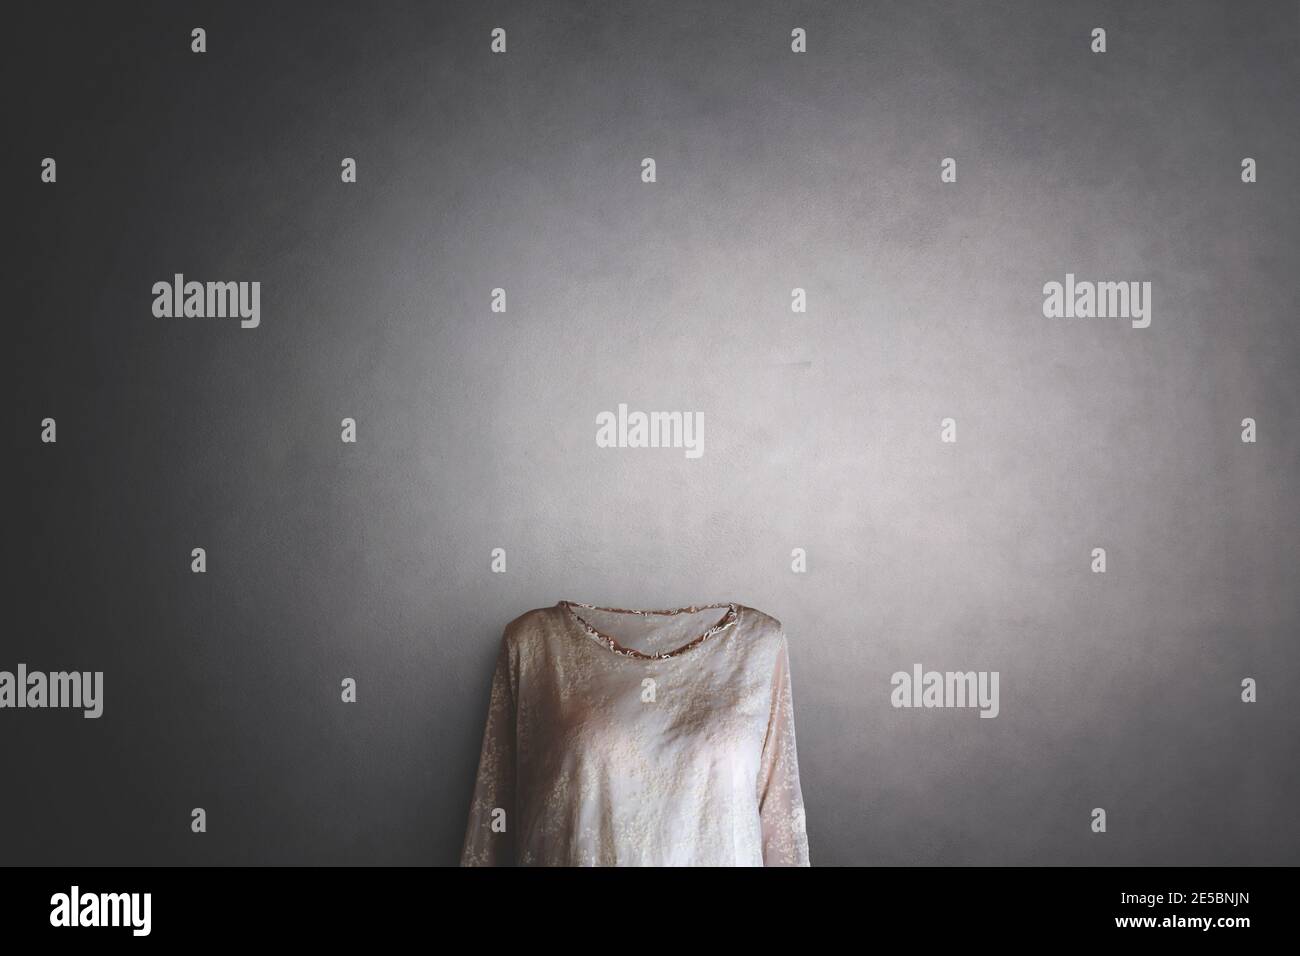 femme invisible sans visage portant un chemisier, concept de perte d'identité Banque D'Images